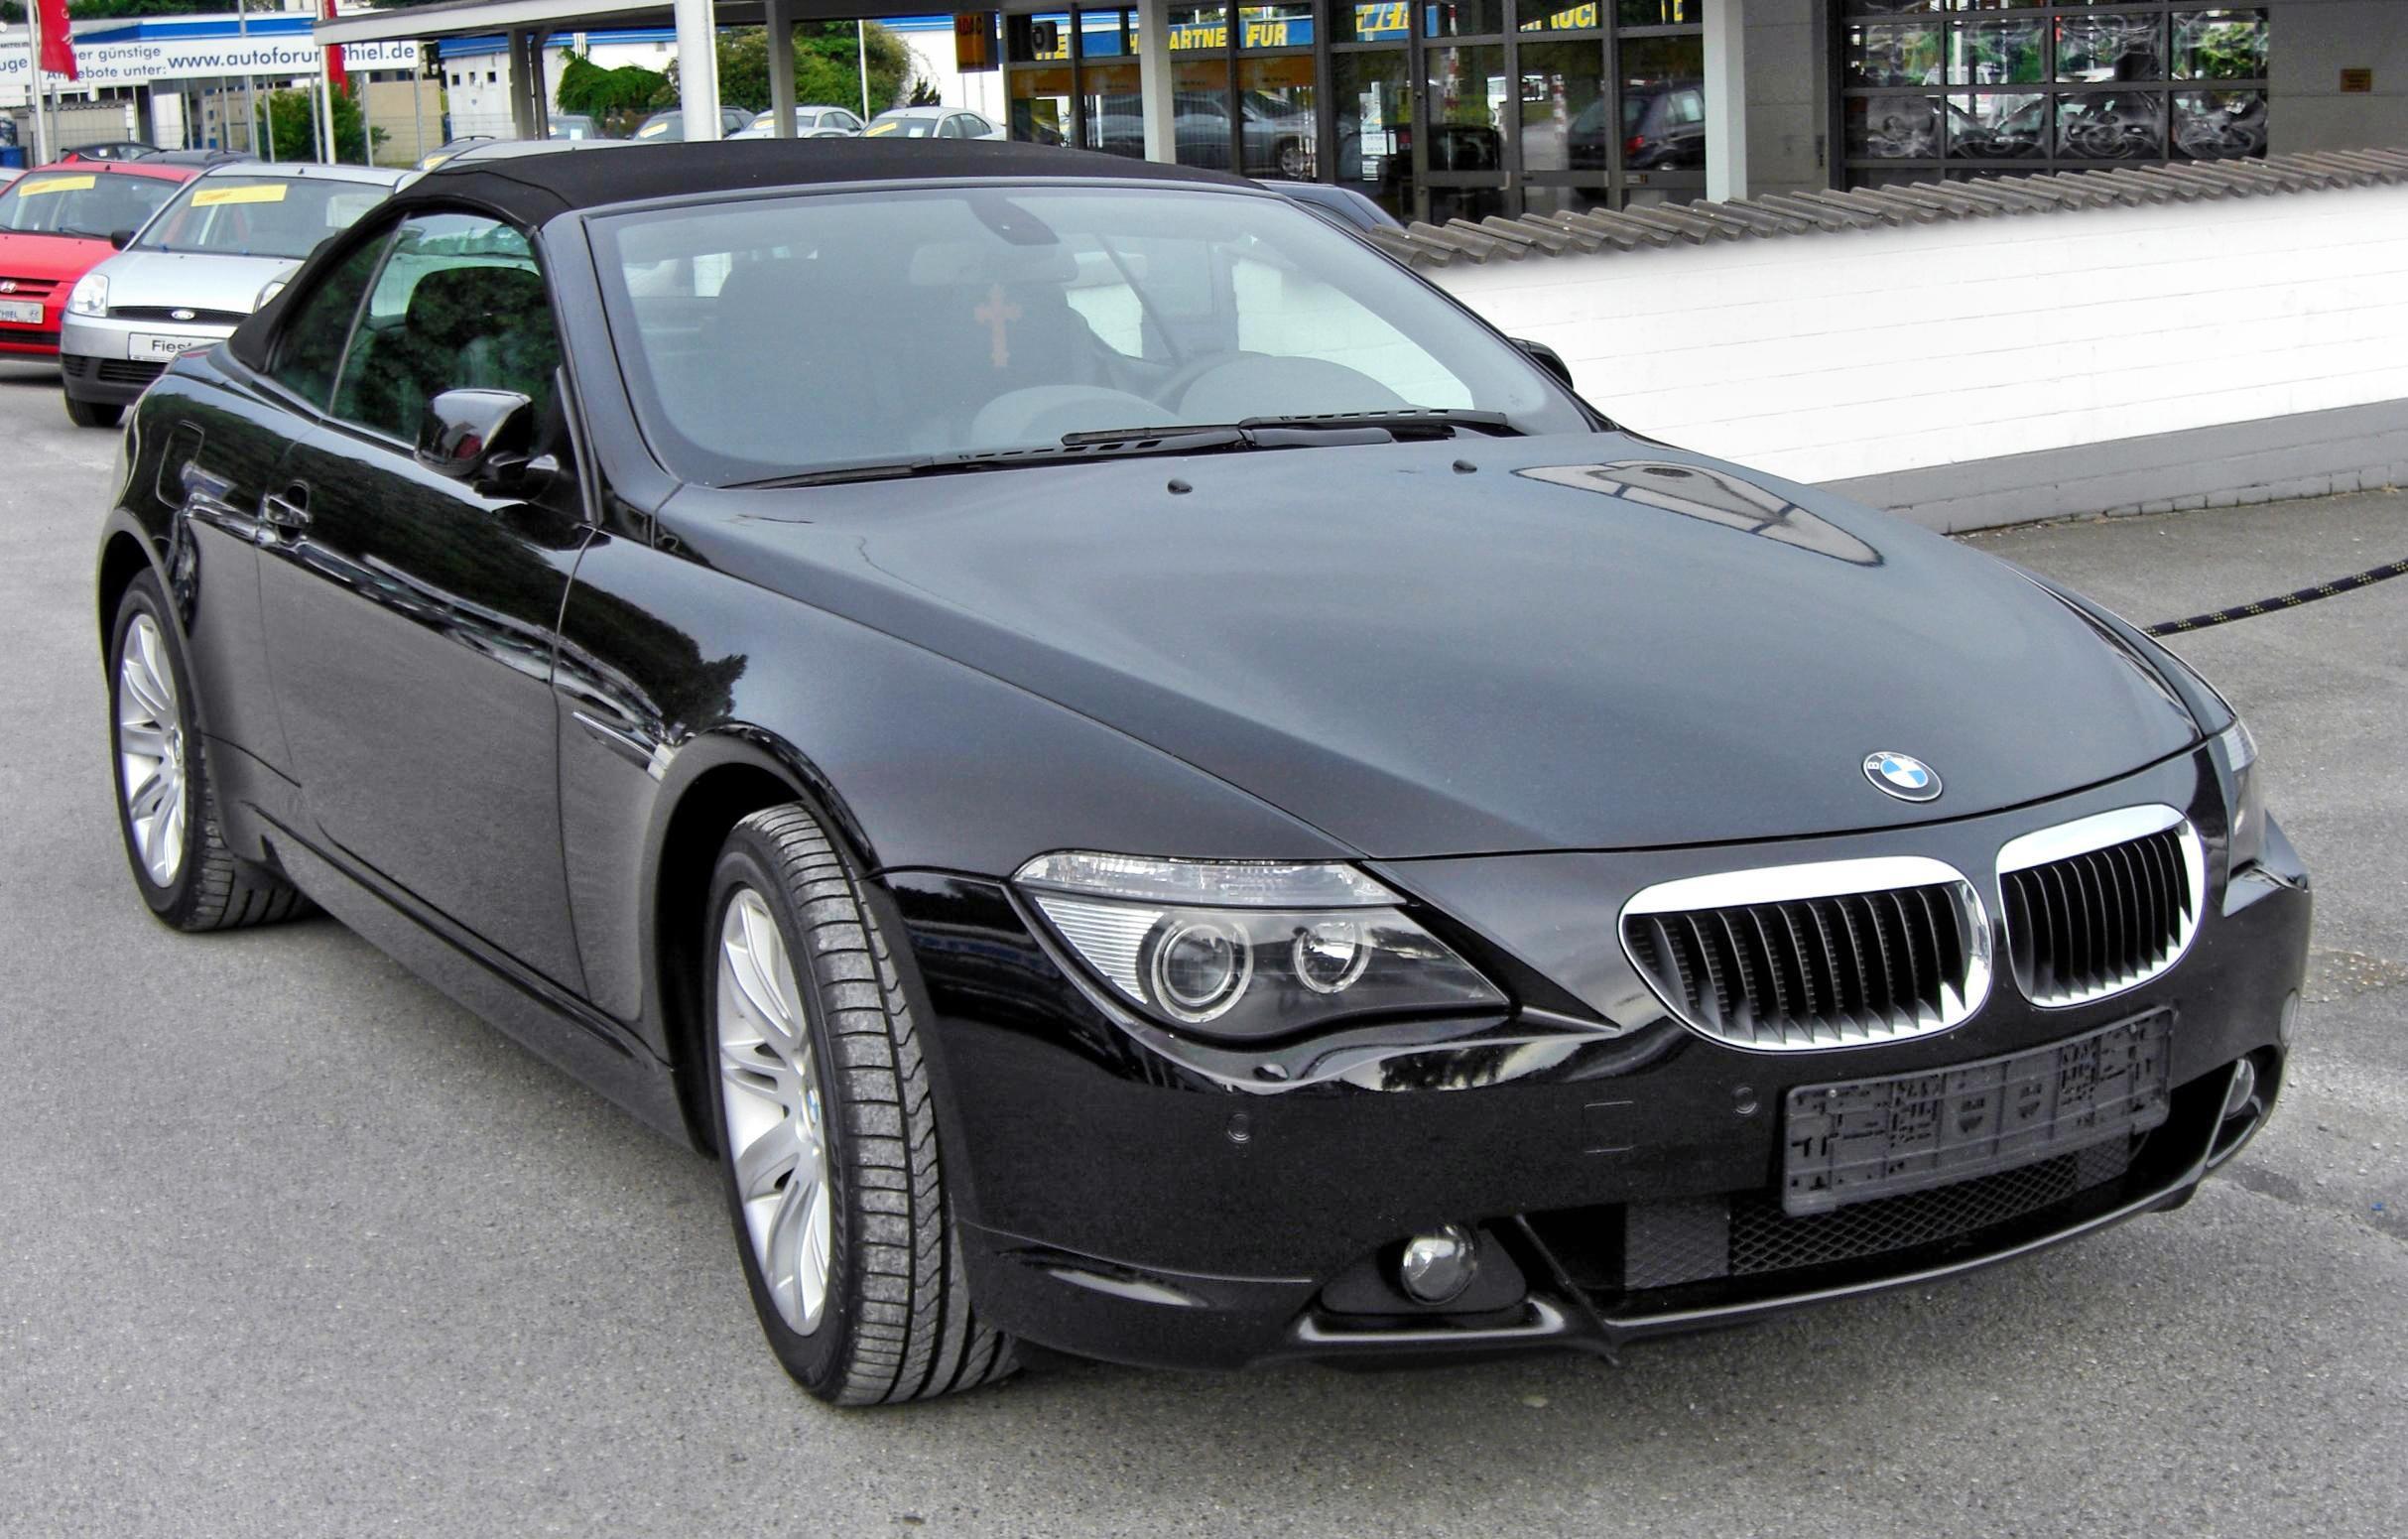 File:BMW 645i 20090525 front.JPG